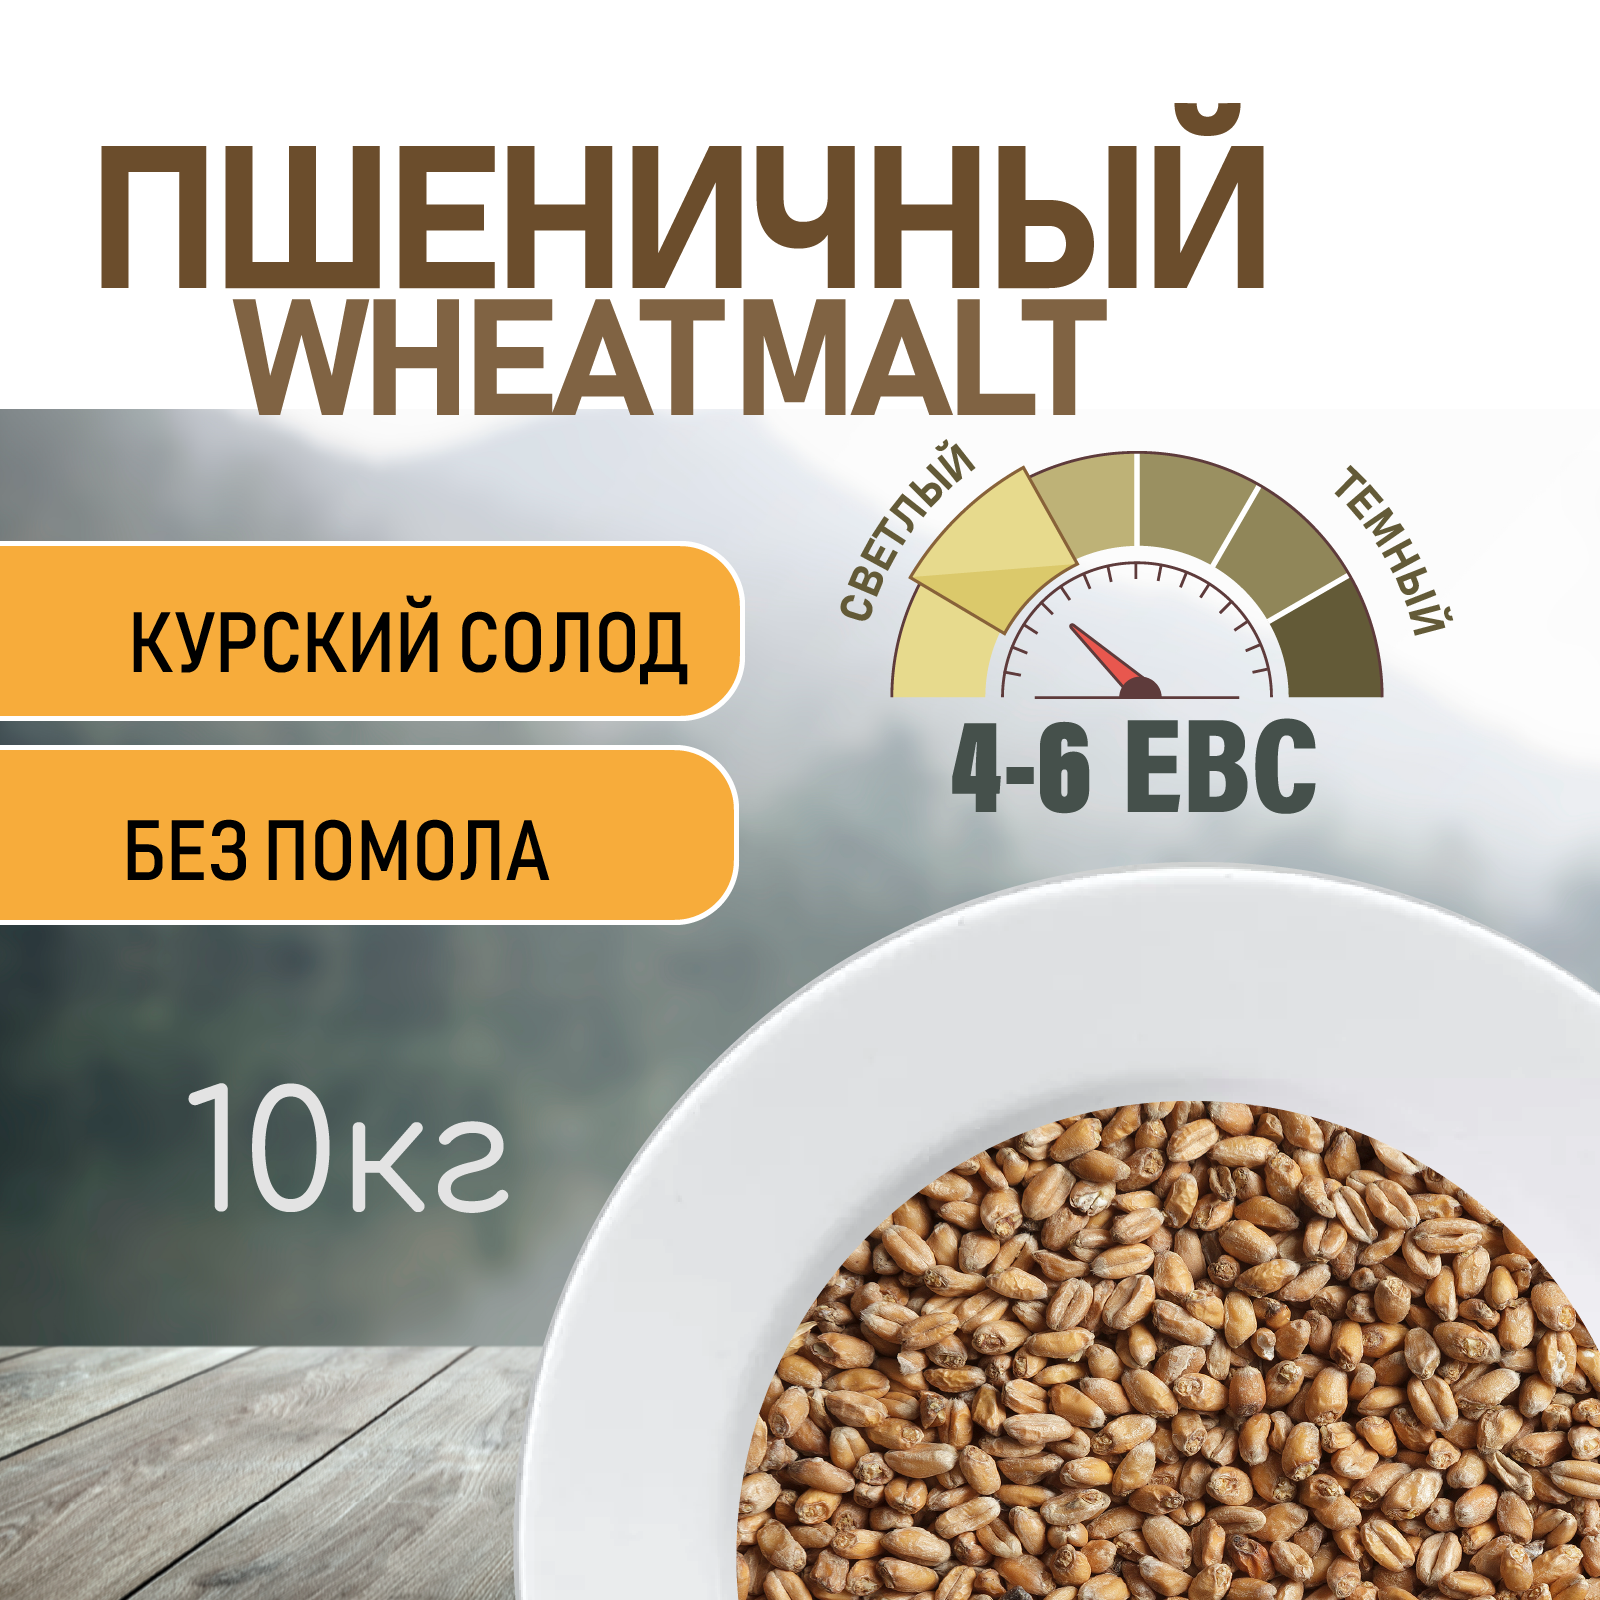 Солод пшеничный wheat ЕВС 4-6 (Курский солод) 10 КГ